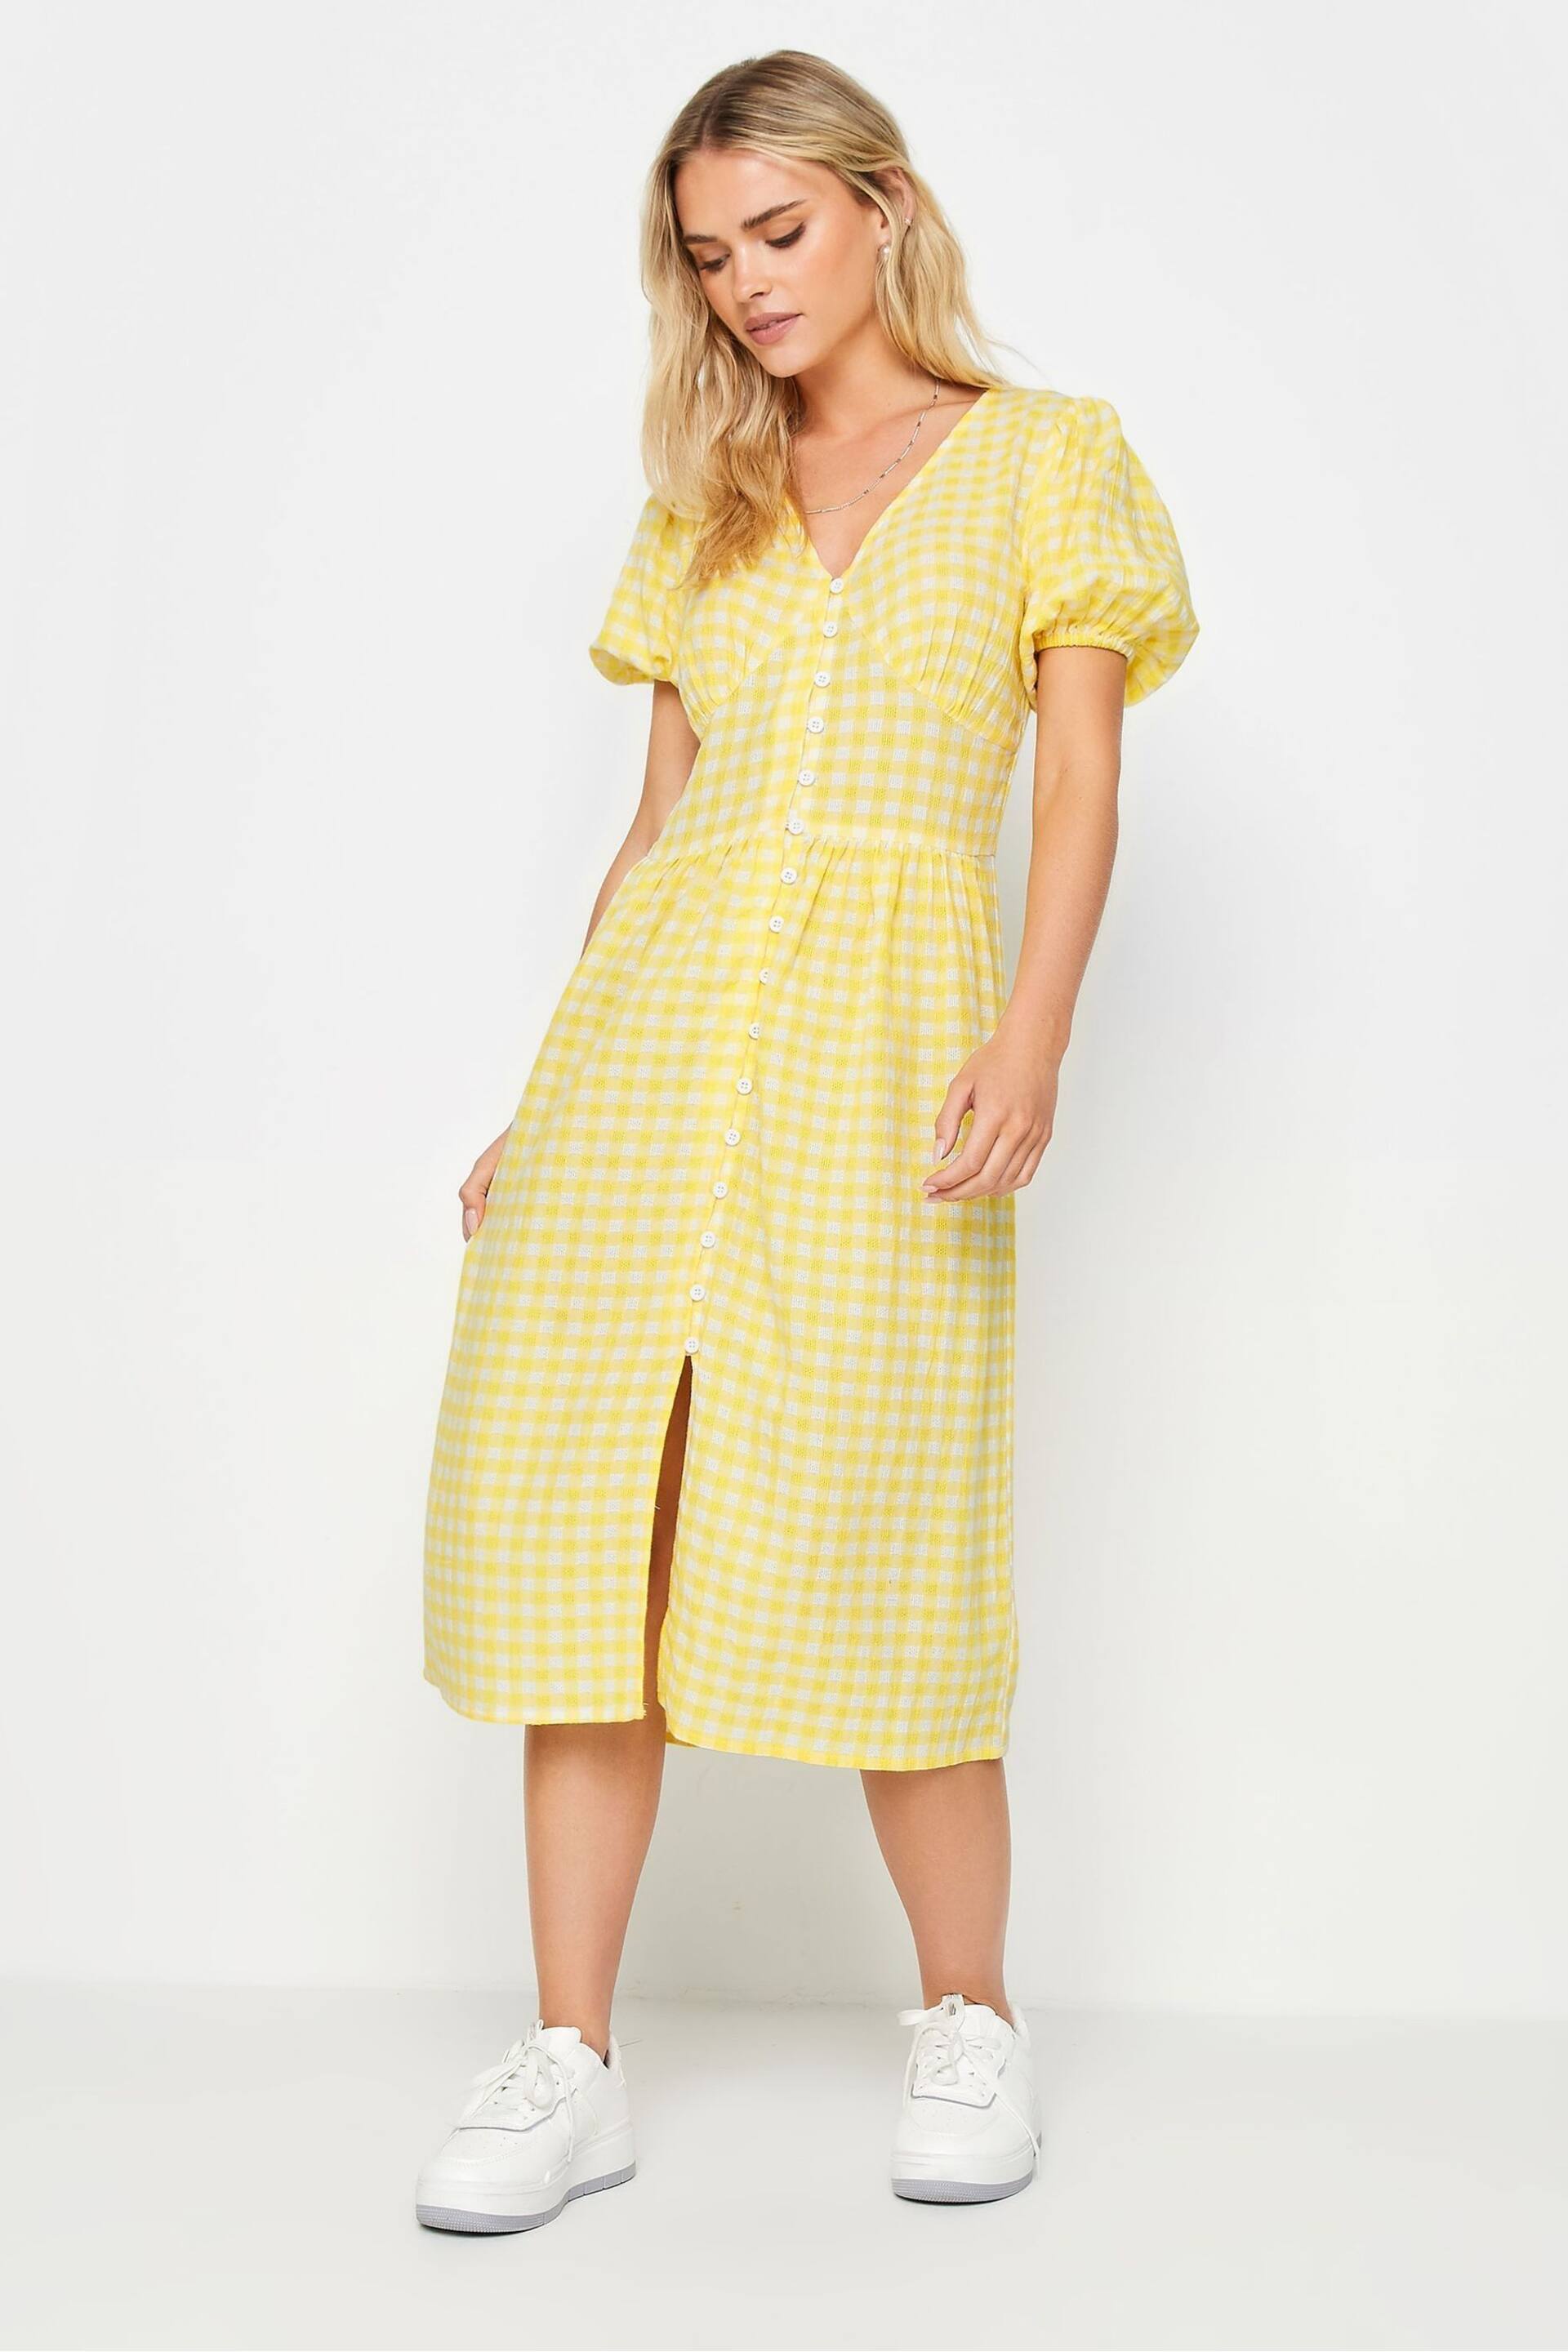 PixieGirl Petite Yellow Yellow Gingham Print Button Through Midi Dress - Image 2 of 5